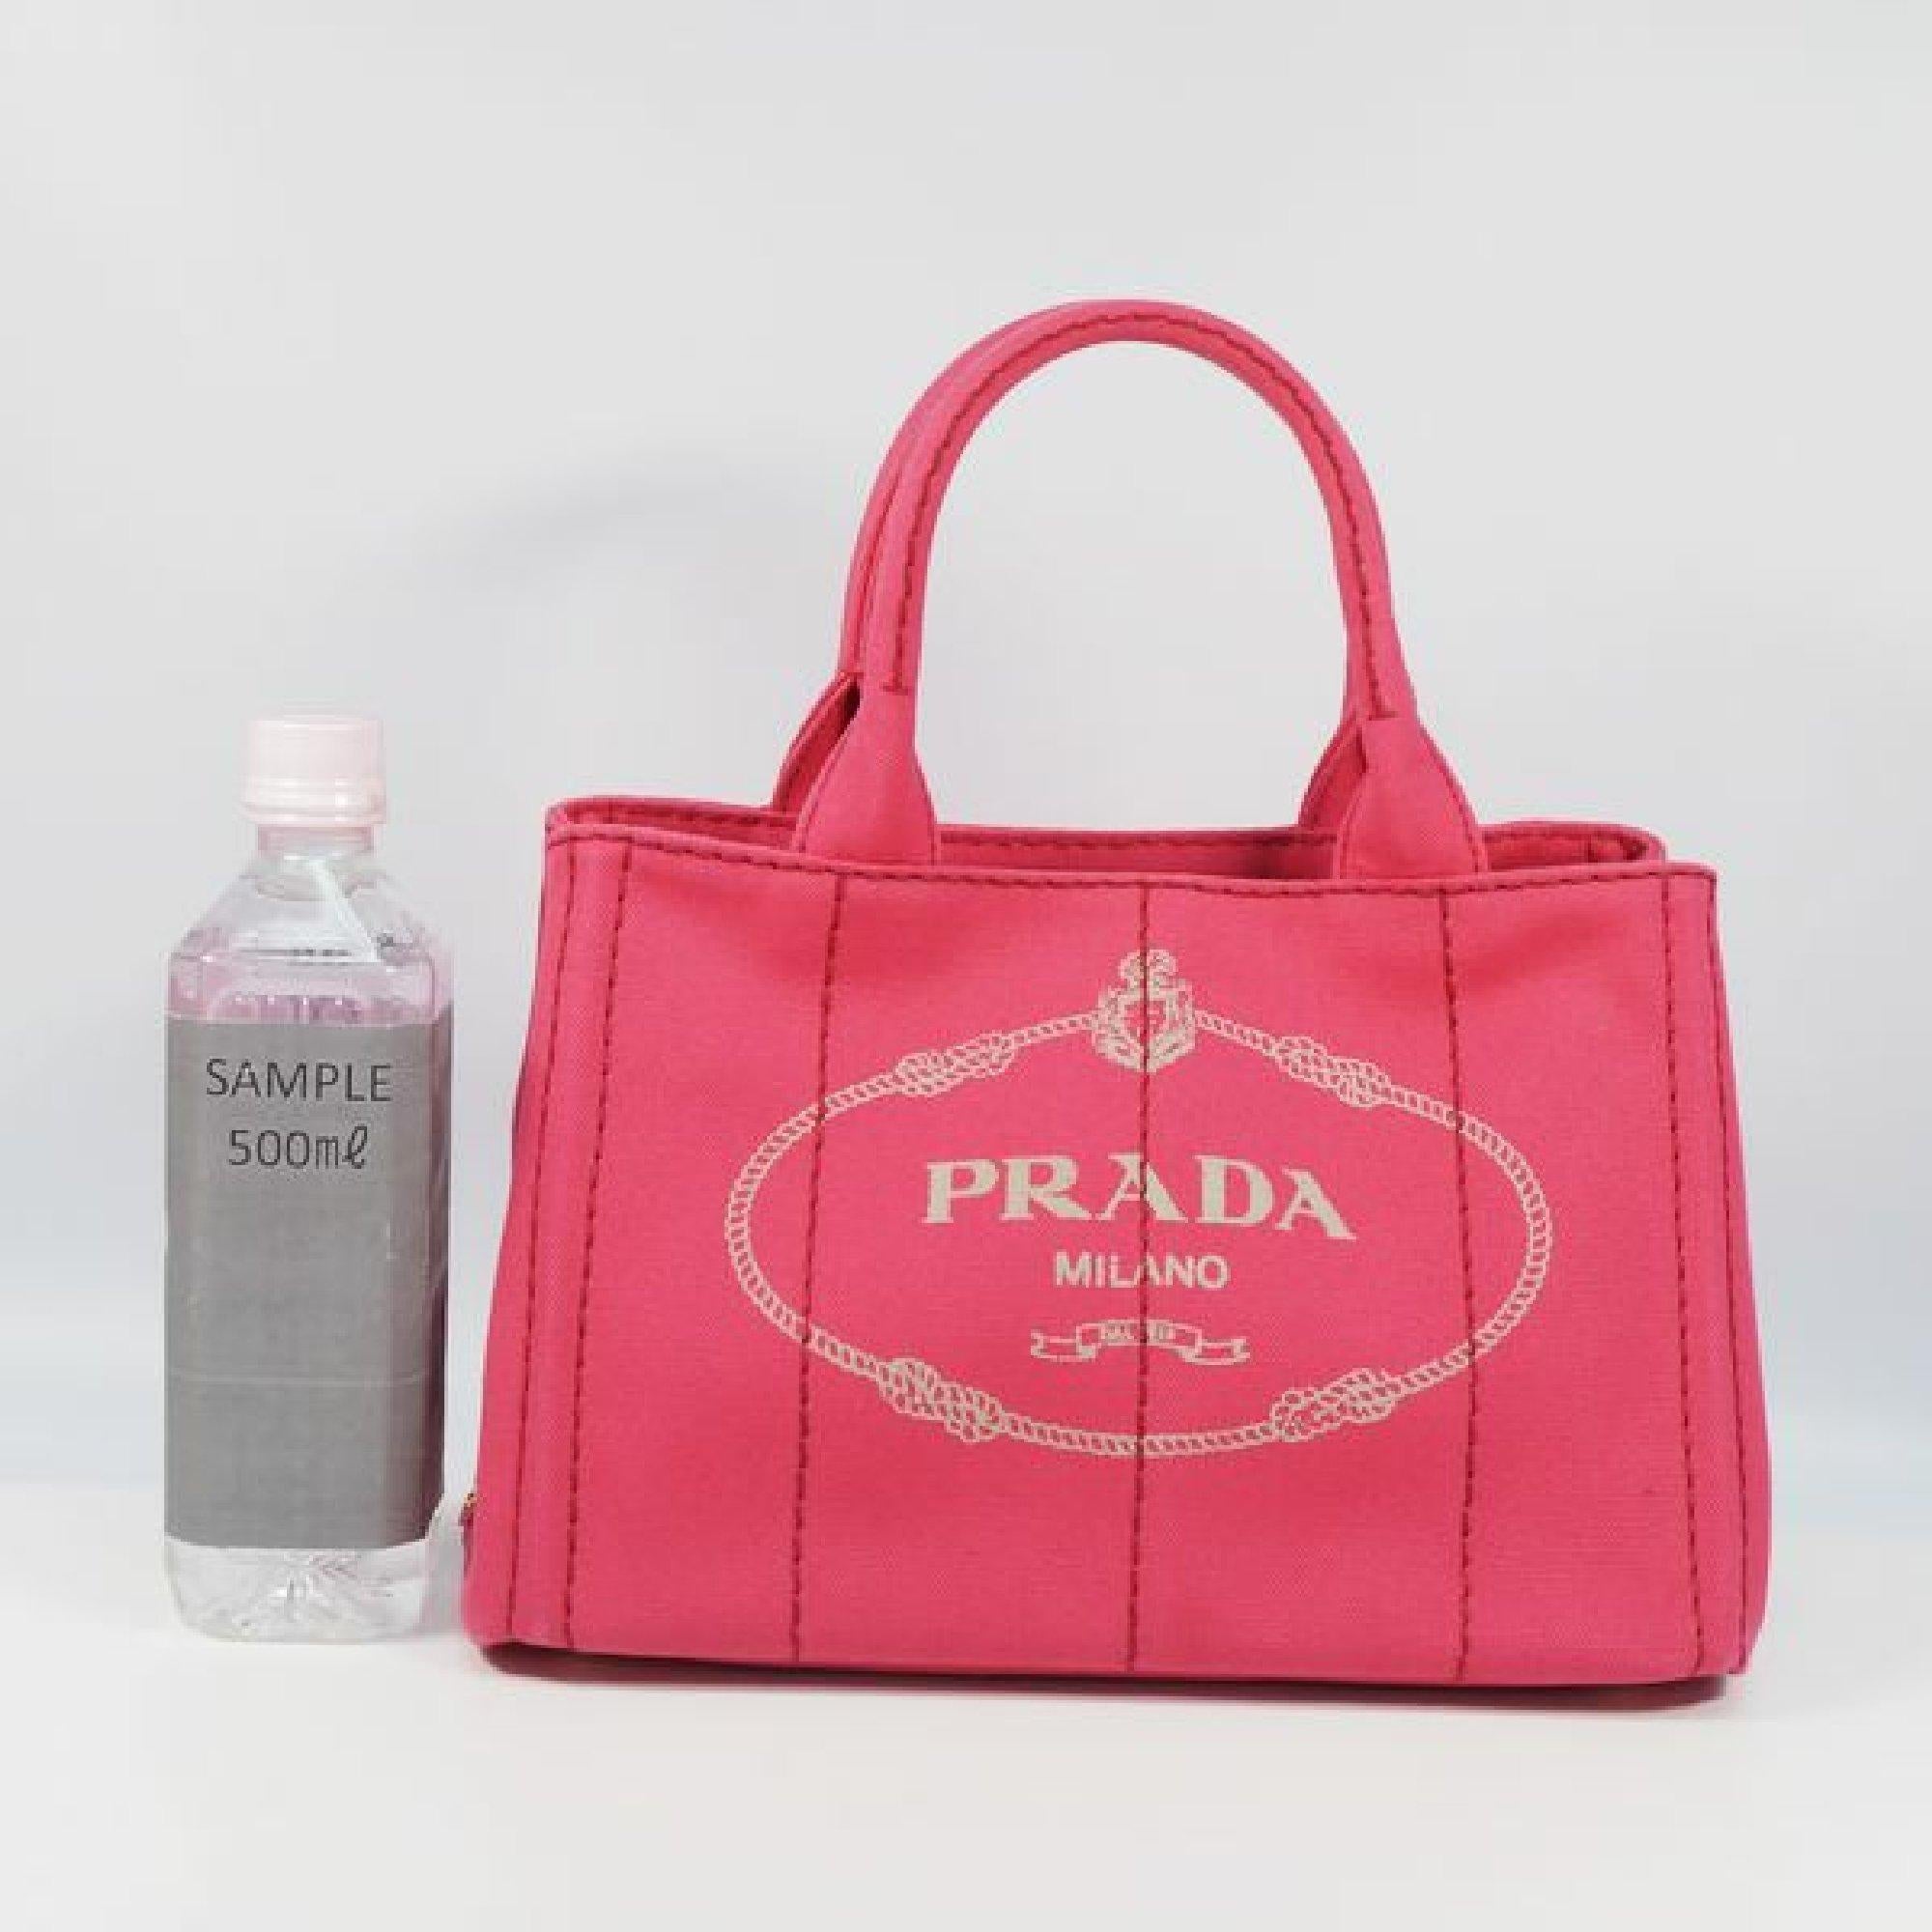 PRADA Canapa2WAY Womens tote bag B2439G Peonia( pink) 4